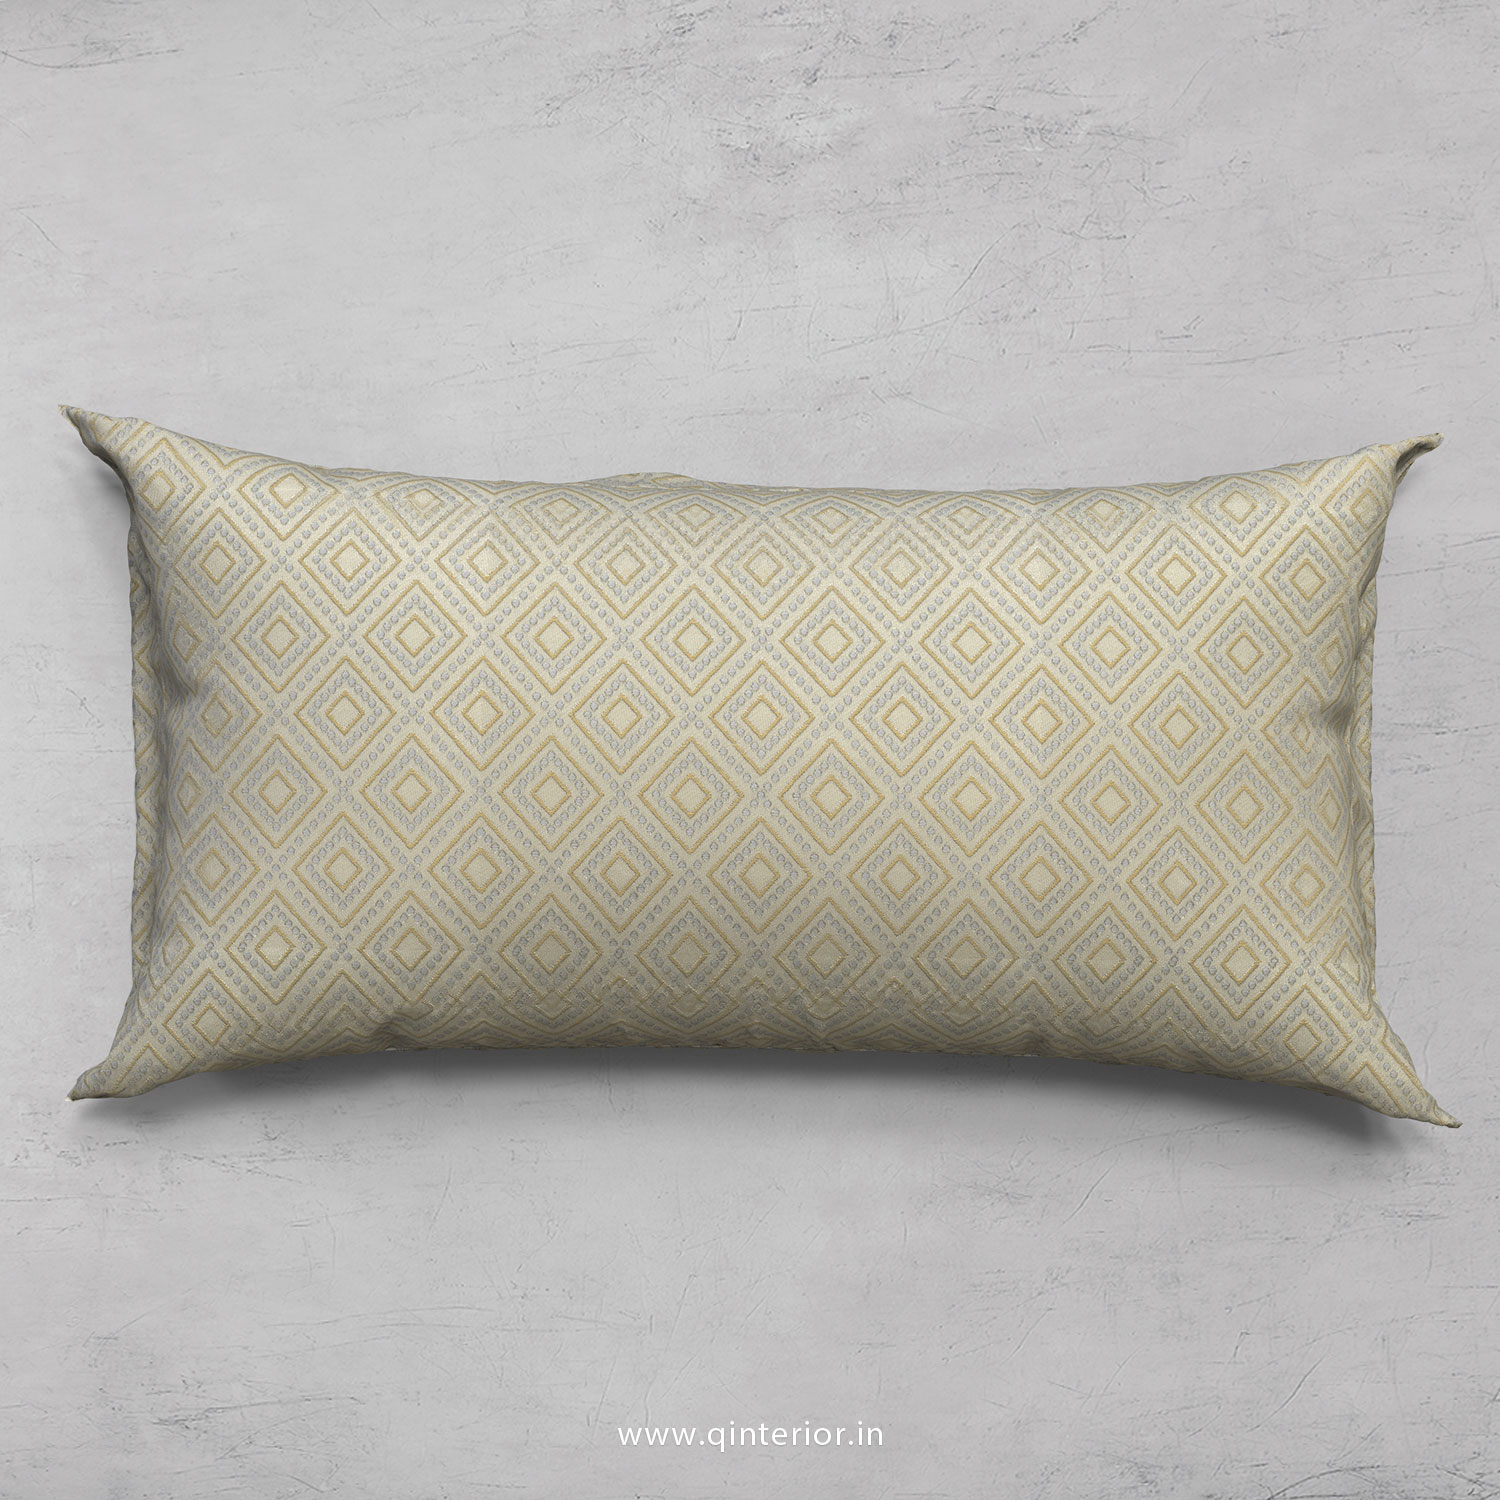 Cushion With Cushion Cover in Jacquard- CUS002 JQ35